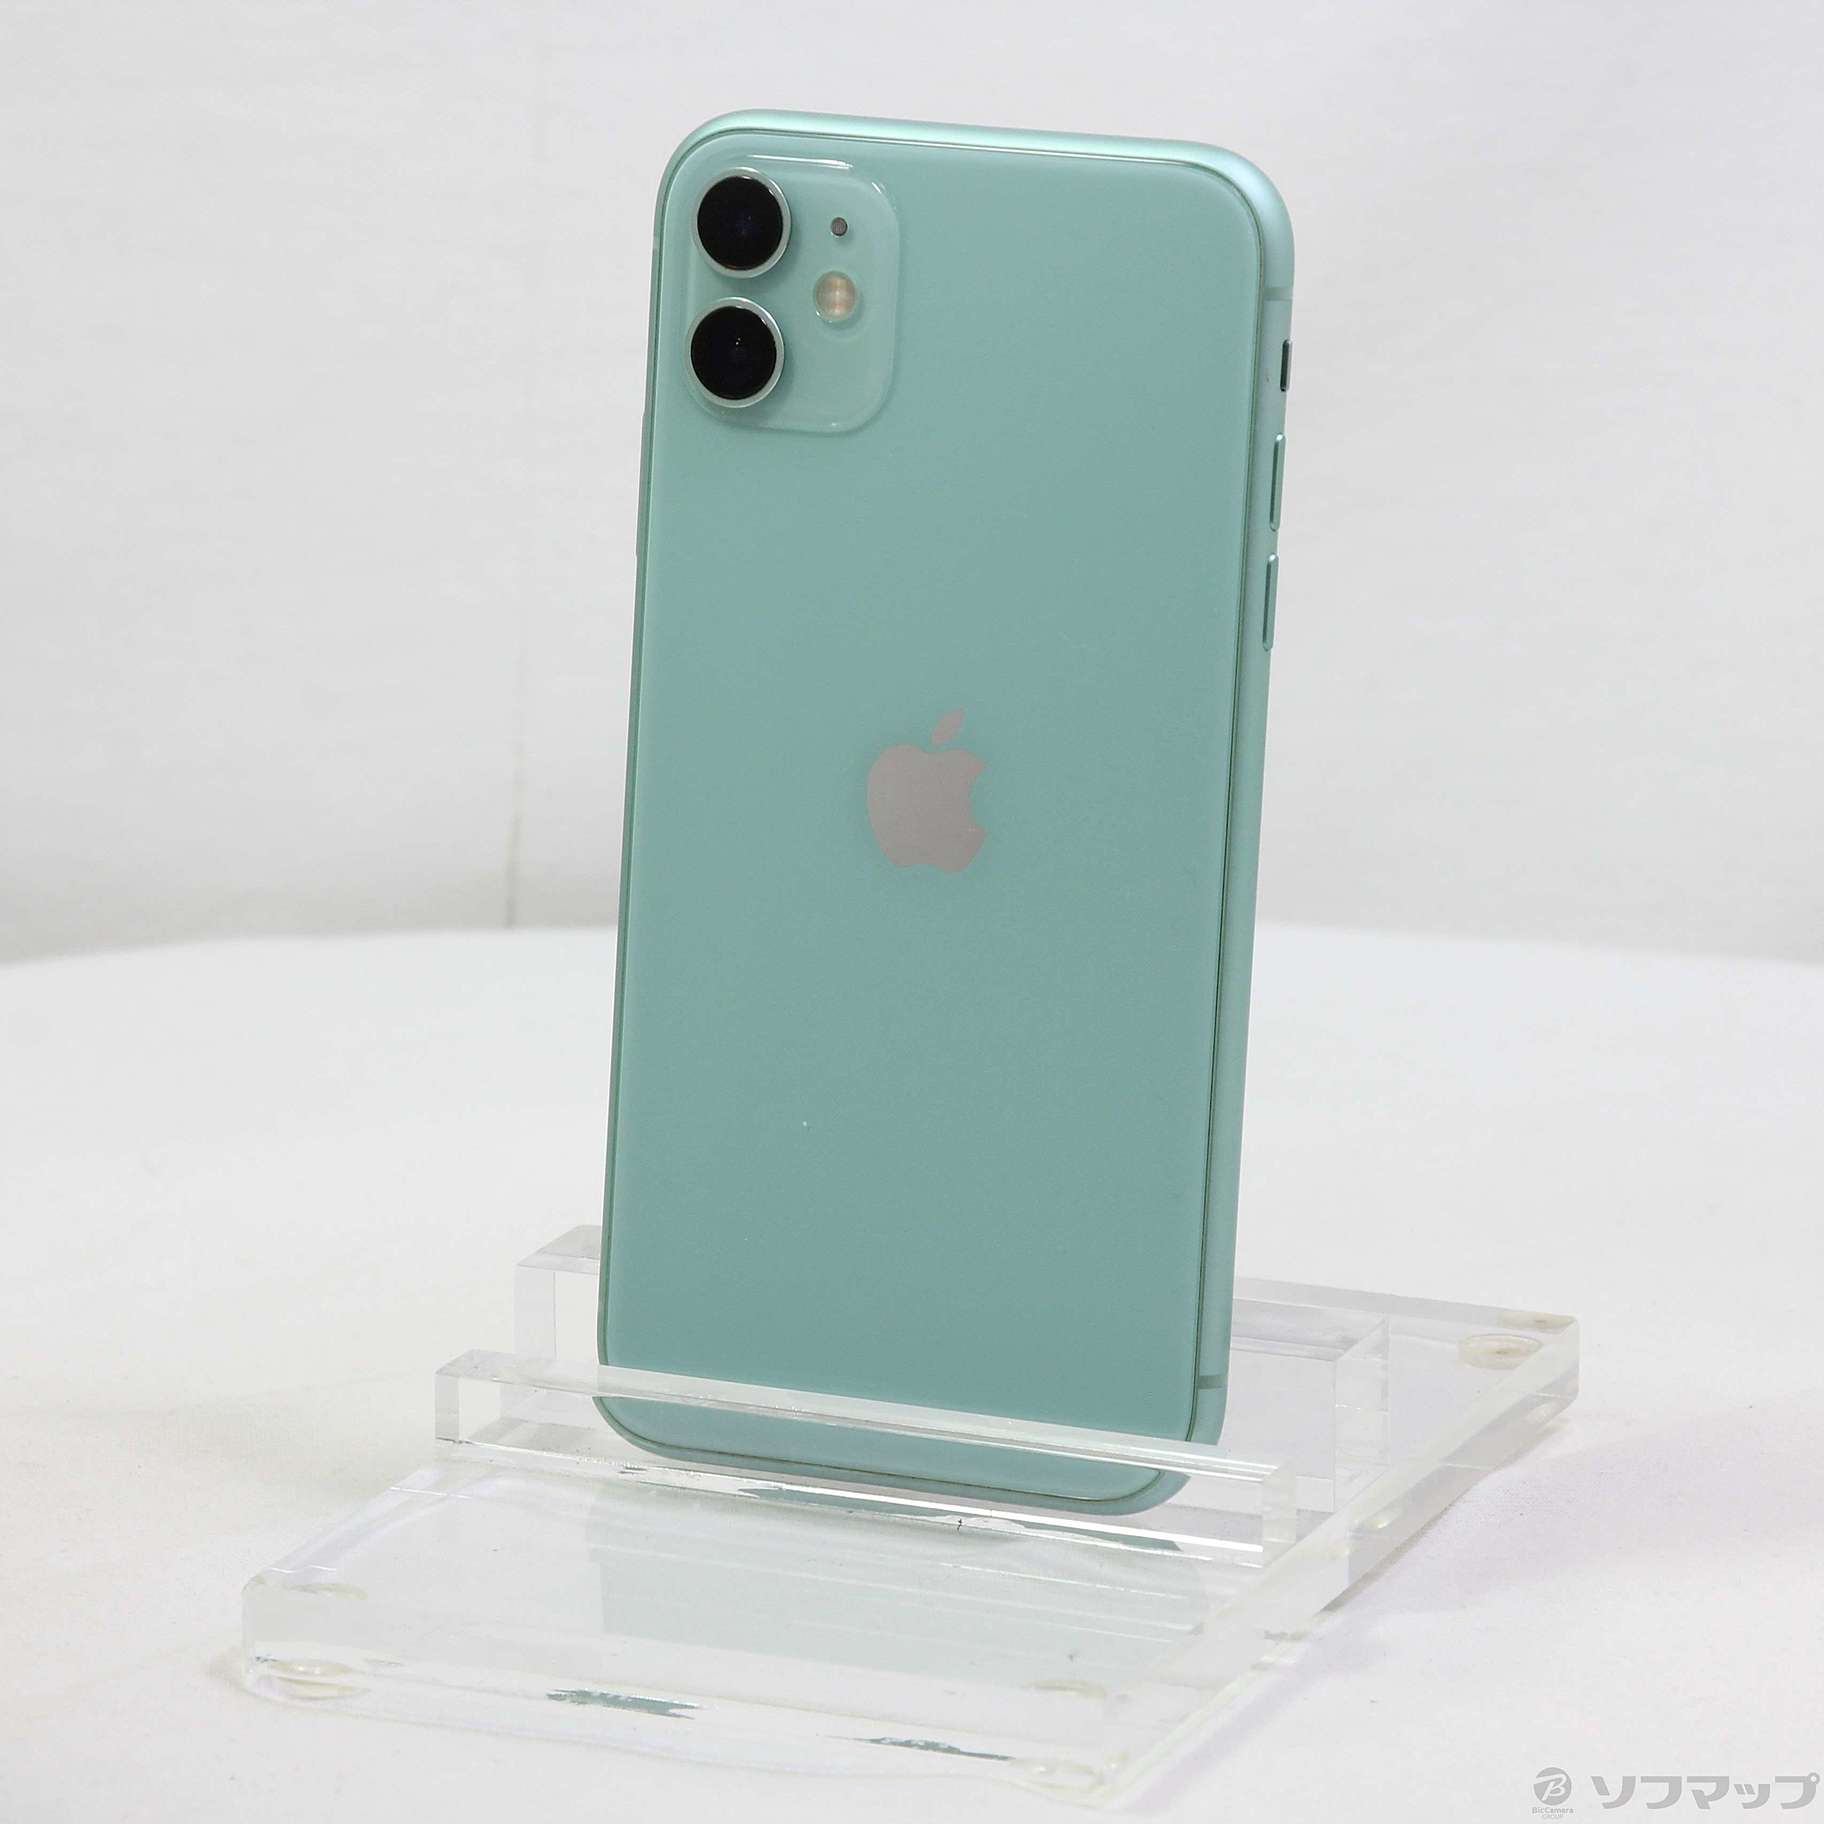 iPhone11 64GB Green SIMフリー